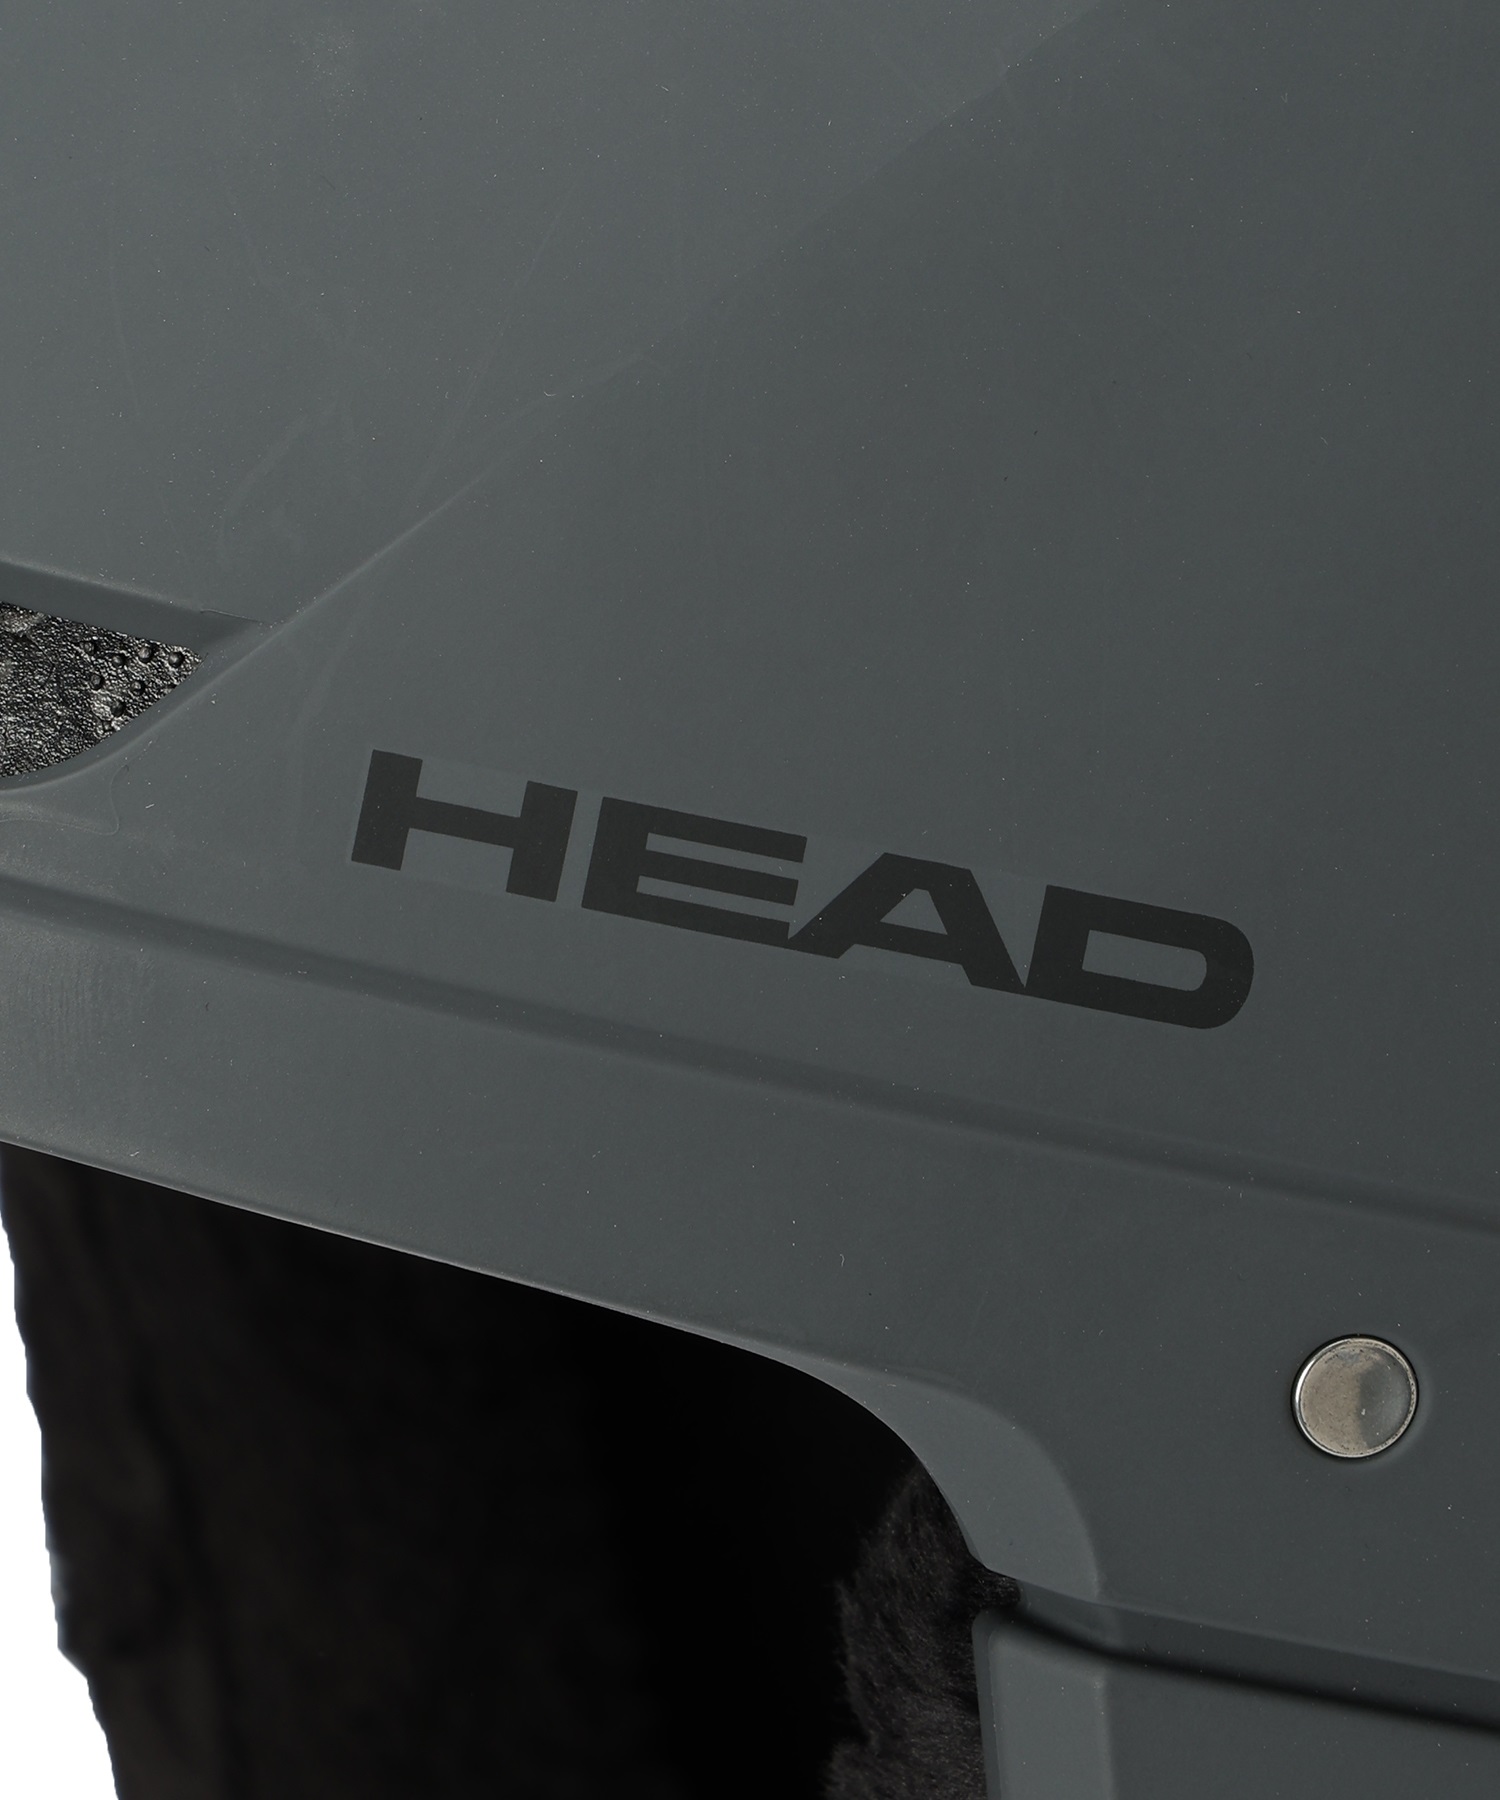 スノーボード スノーヘルメット ユニセックス HEAD ヘッド COMPACT 22COMPACT ムラサキスポーツ(ANTRC-XL)